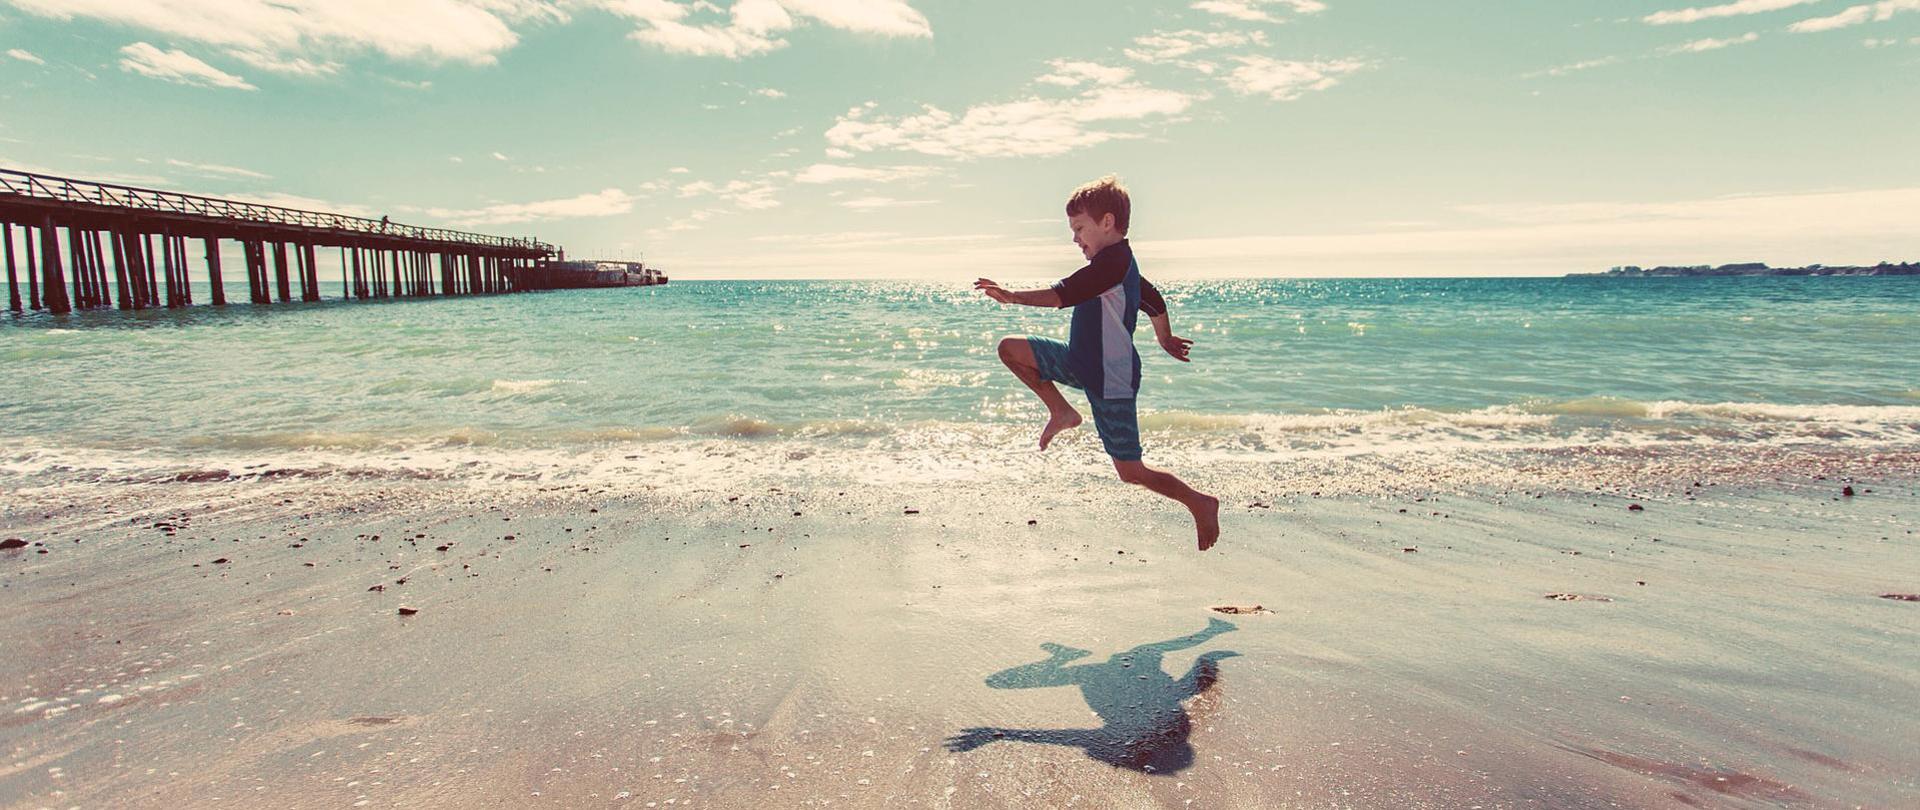 zdjęcie skaczącego chłopca na plaży